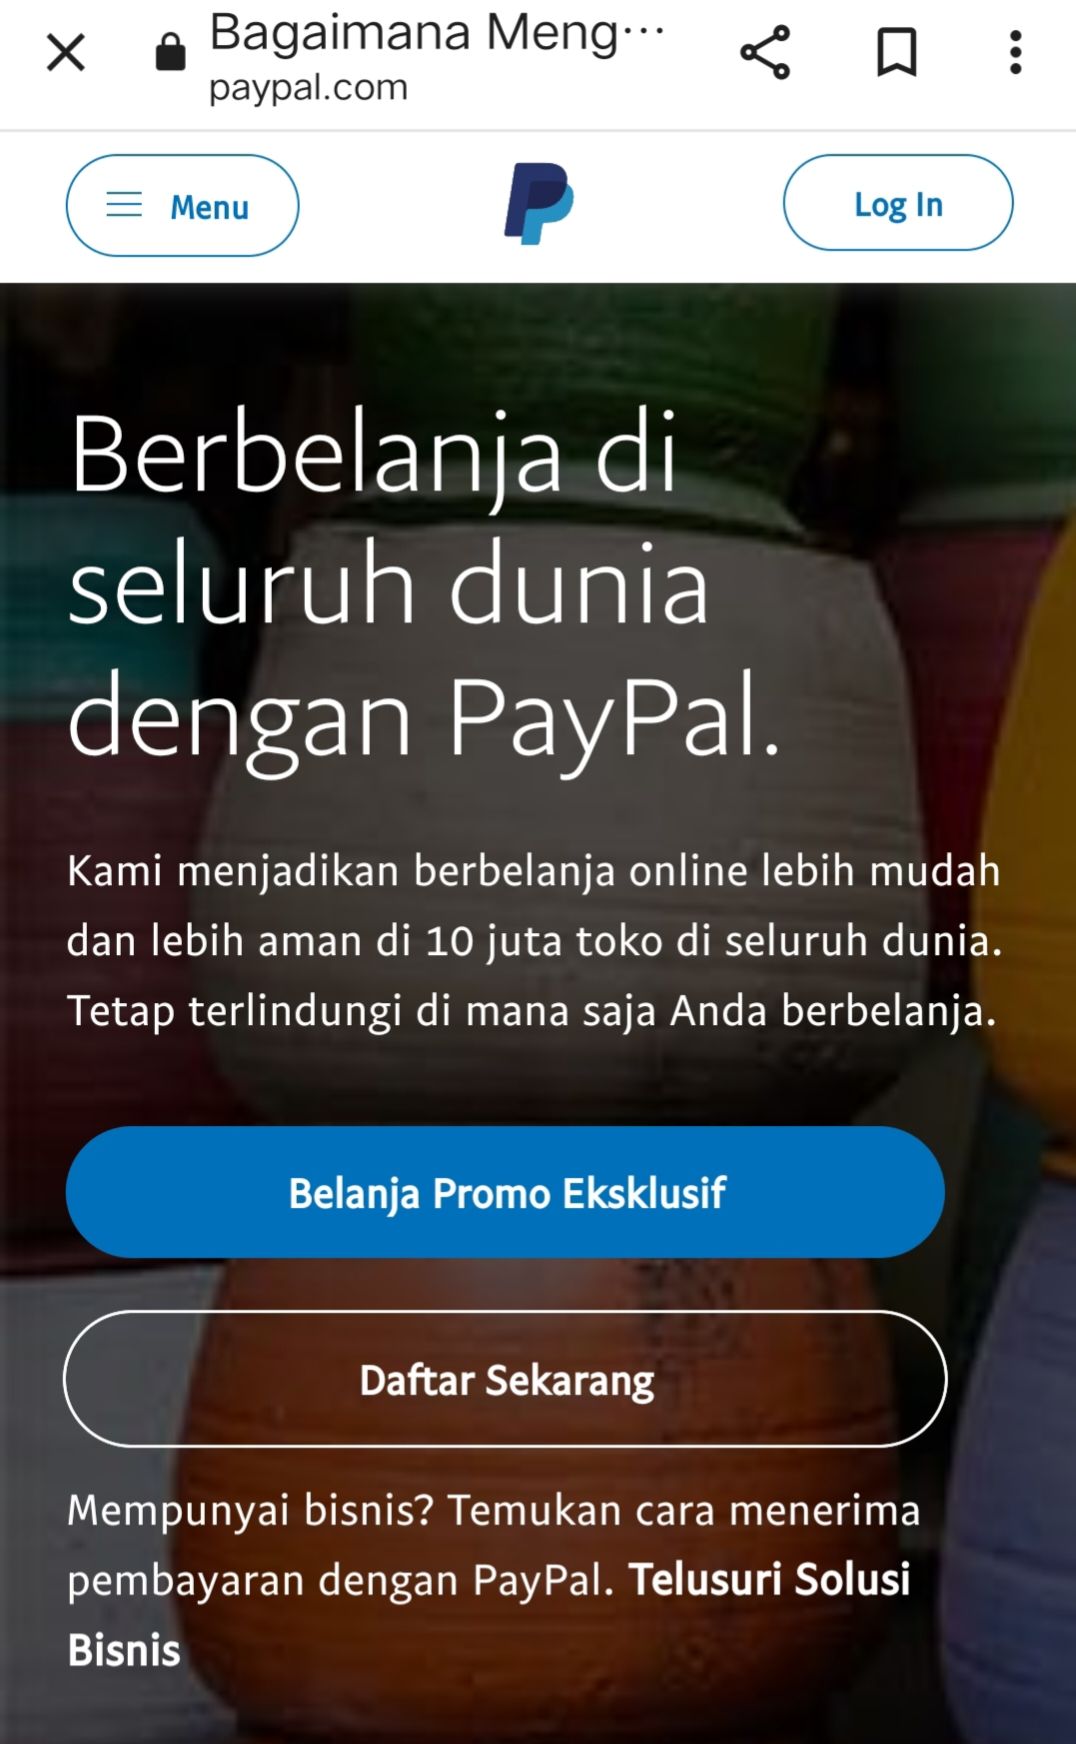 Cara membuat akun PayPal 